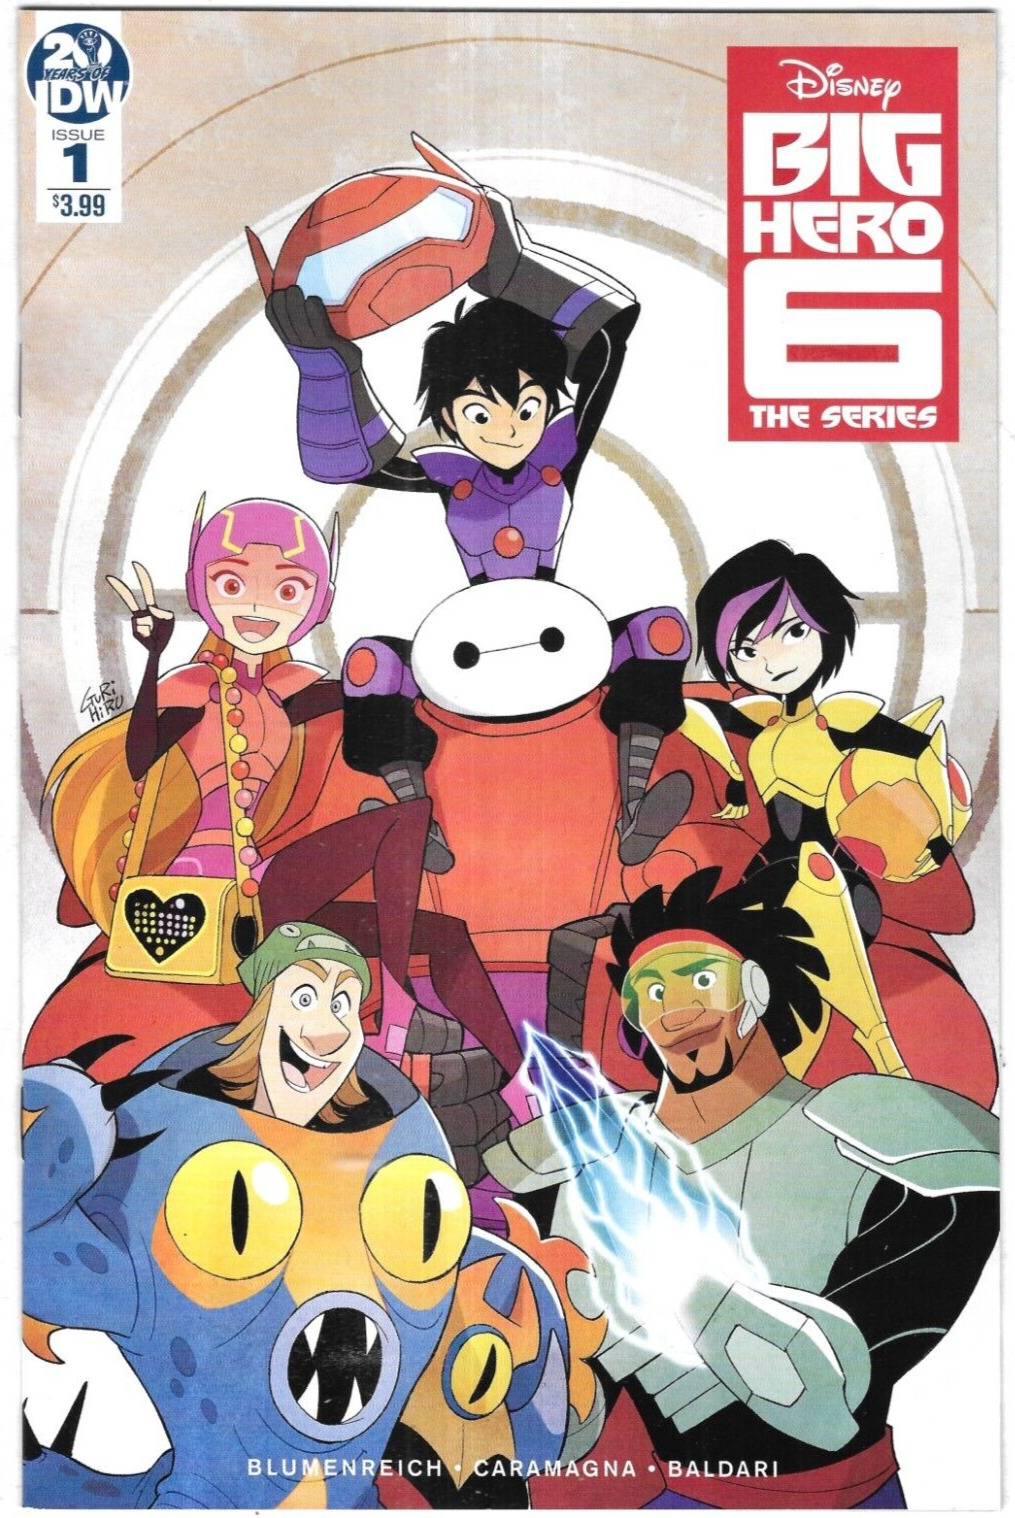 Big Hero Six Comic 1 The Series First Print Cover A Gurihiru 2019 Blumenreich